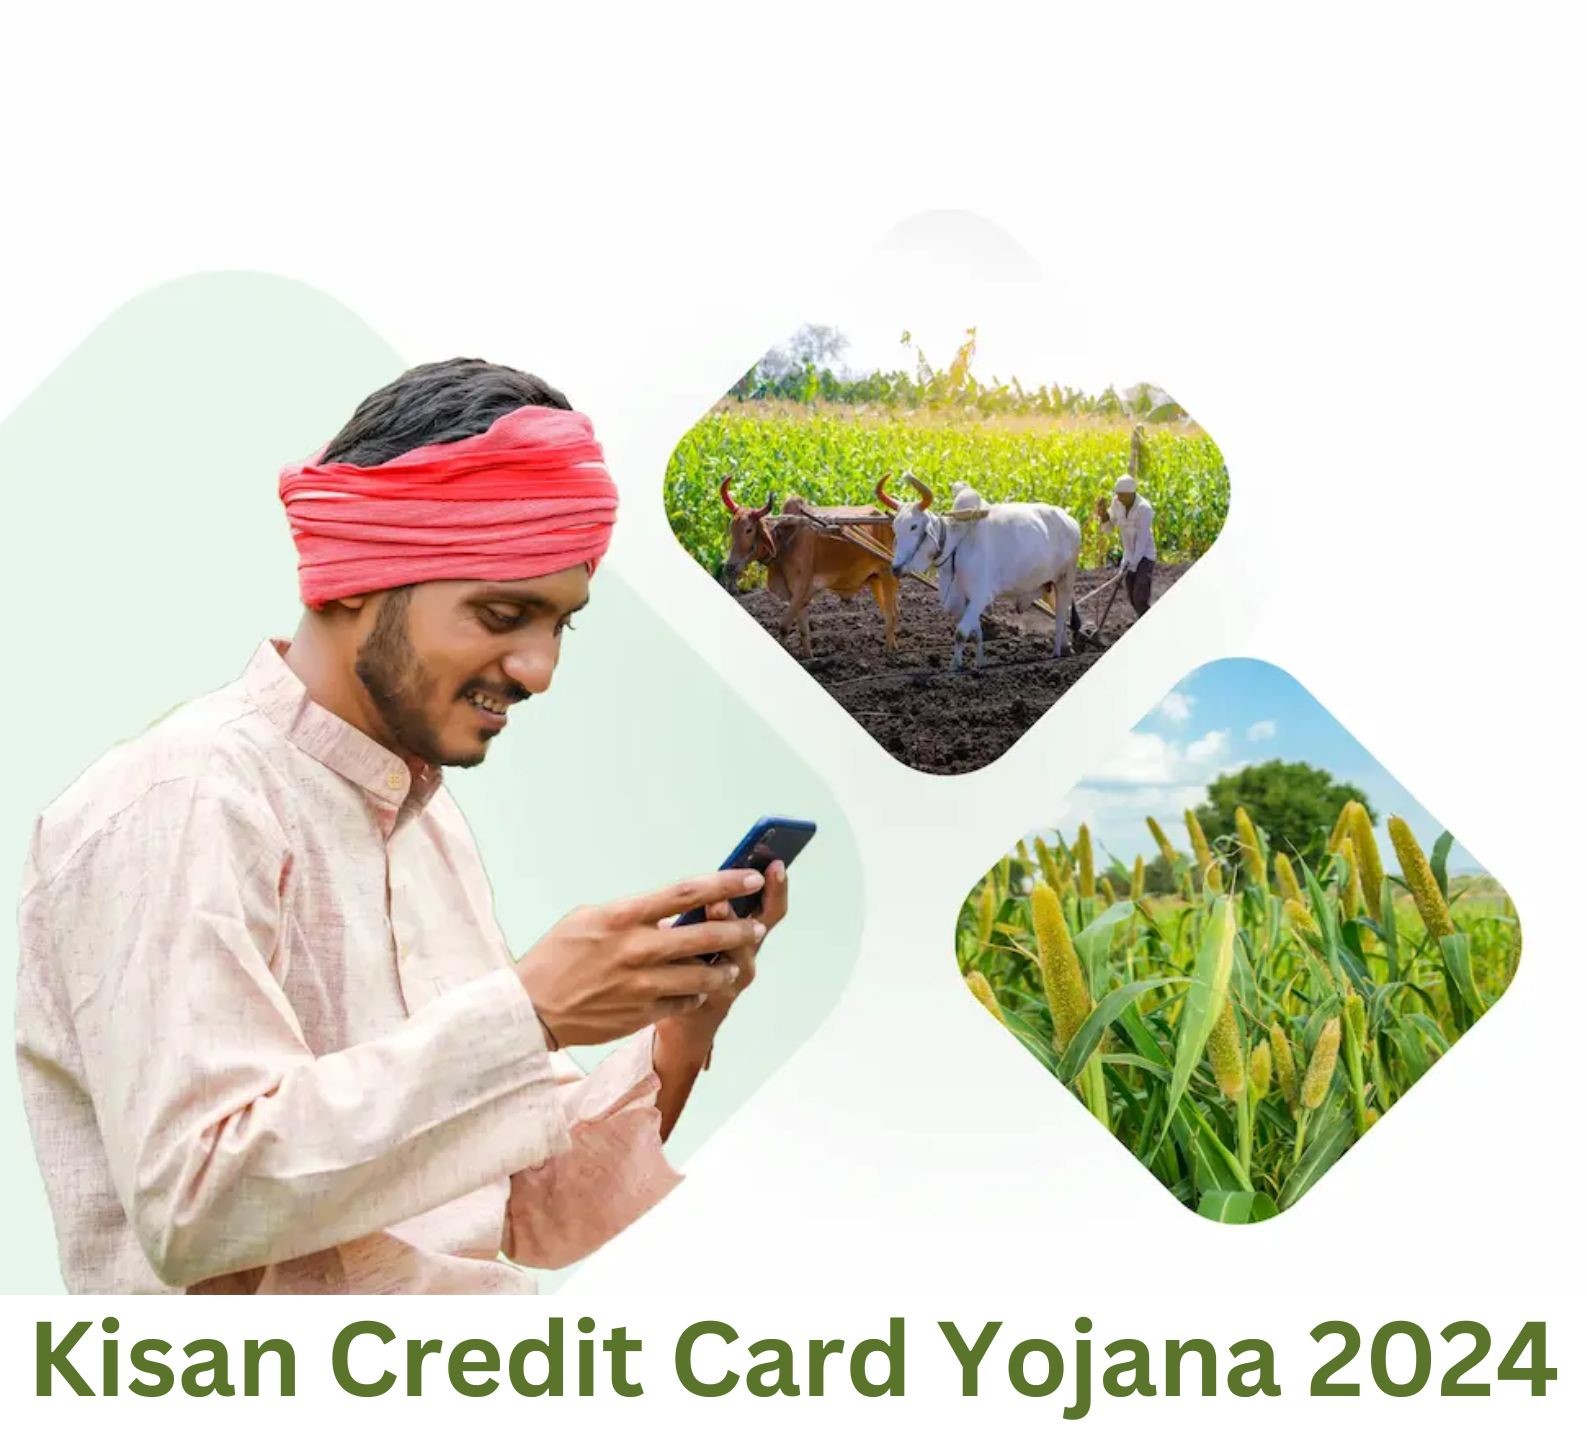 P.M. Kisan Credit Card Yojana 2024